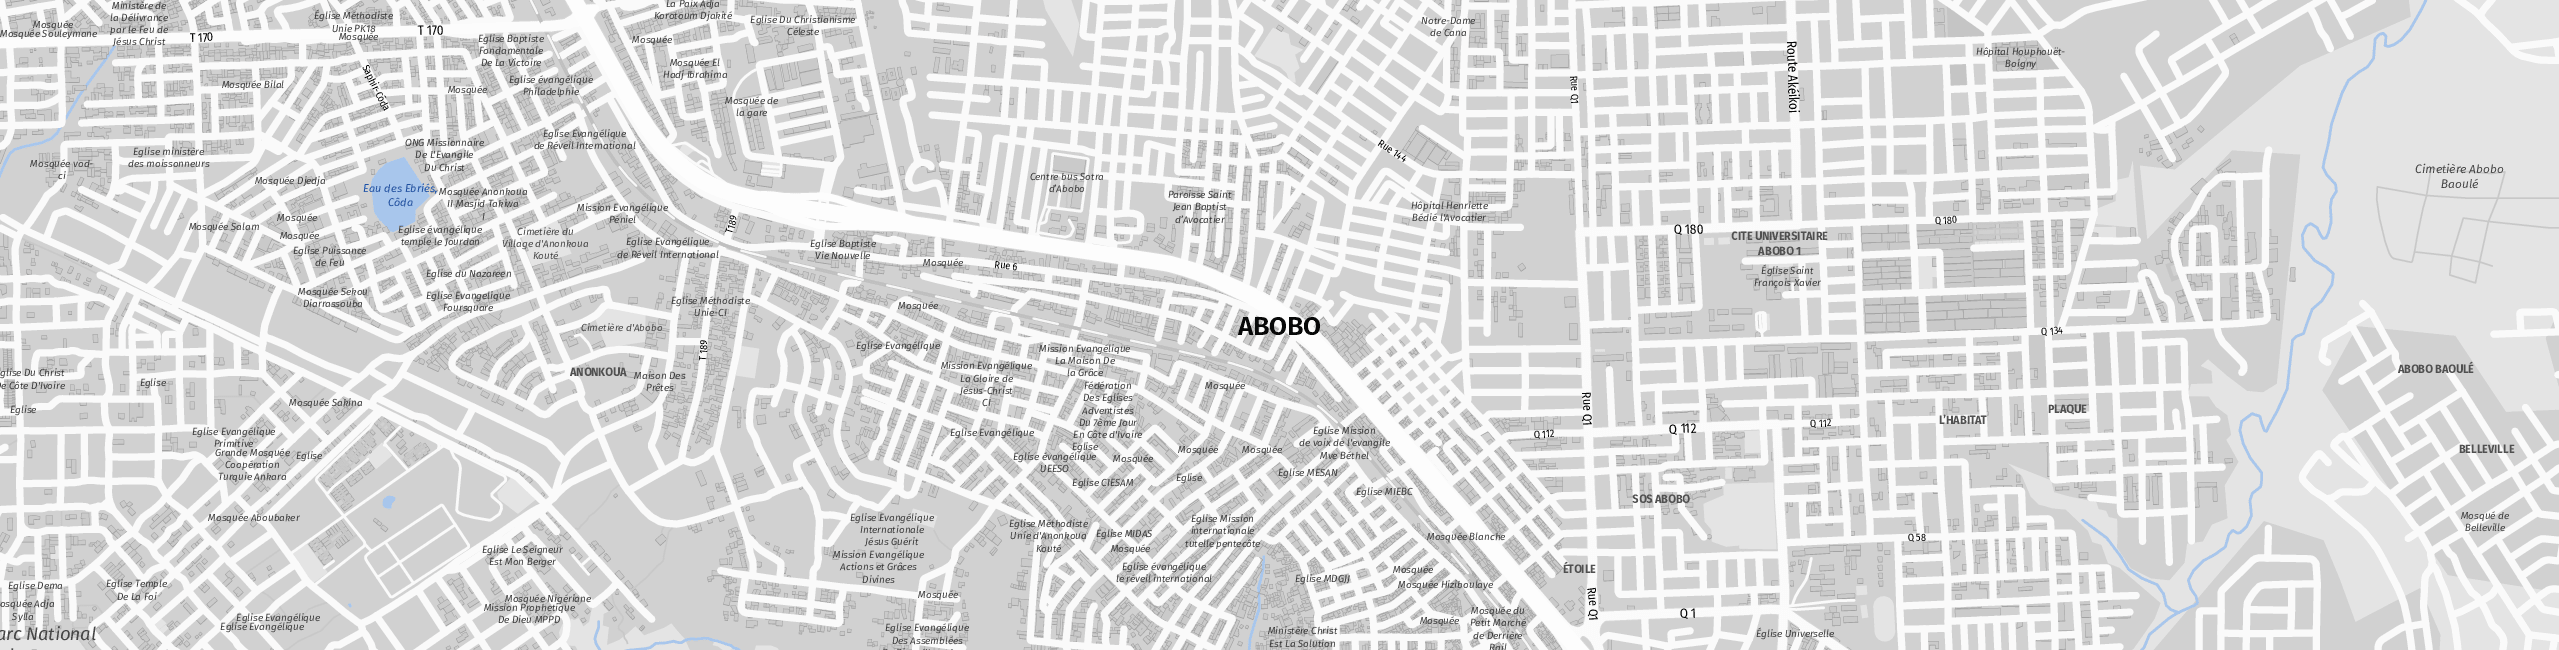 Stadtplan Abobo zum Downloaden.